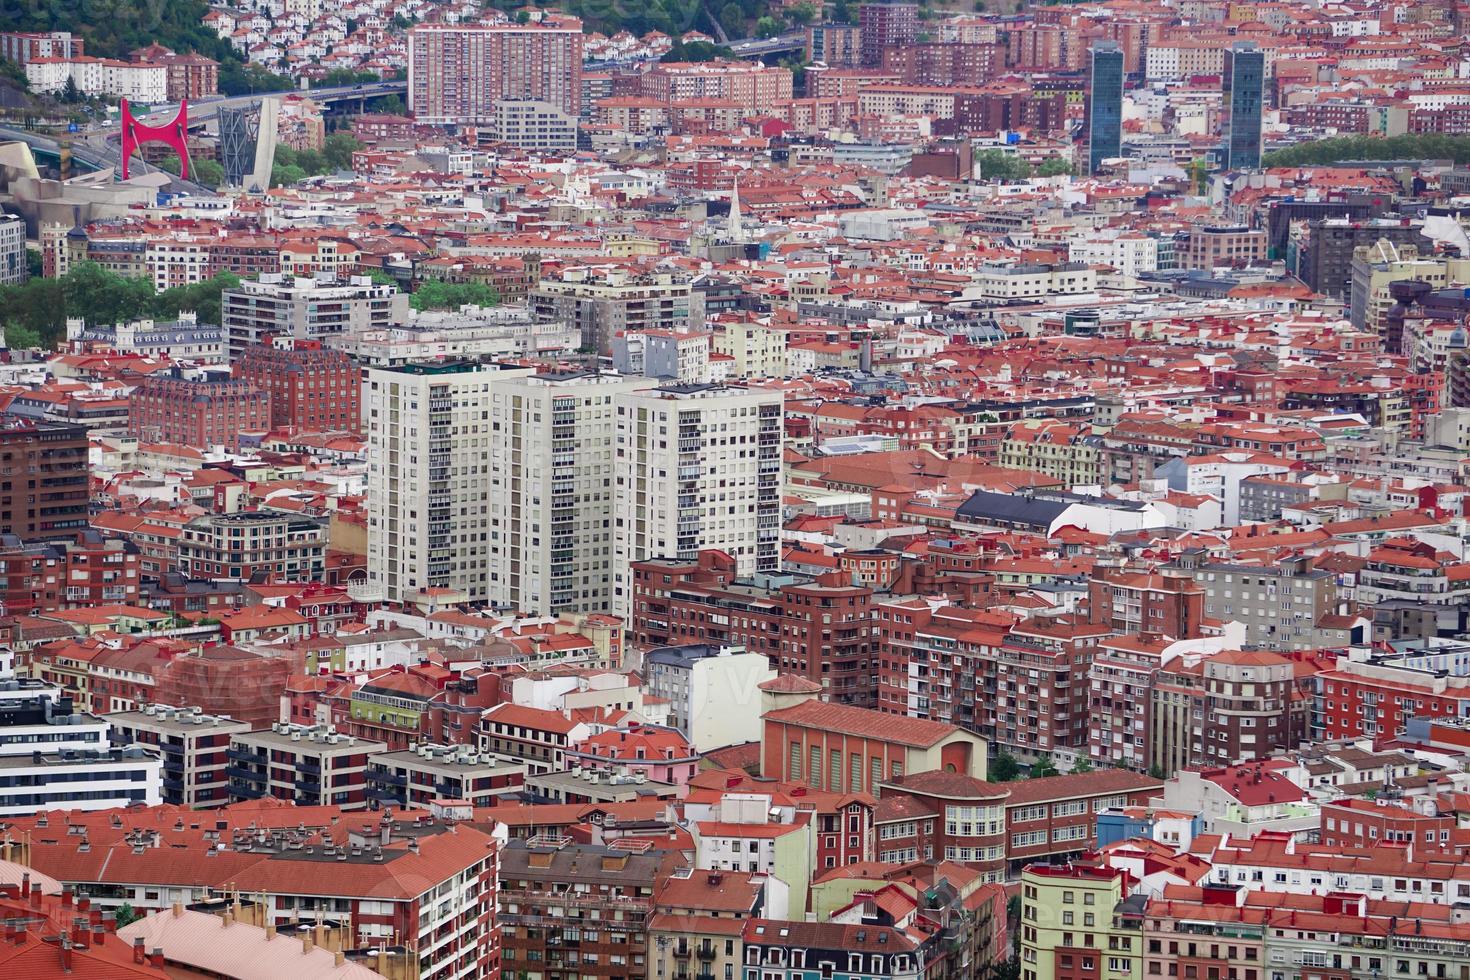 cityscape and architecture in Bilbao city, Spain, travel destination photo